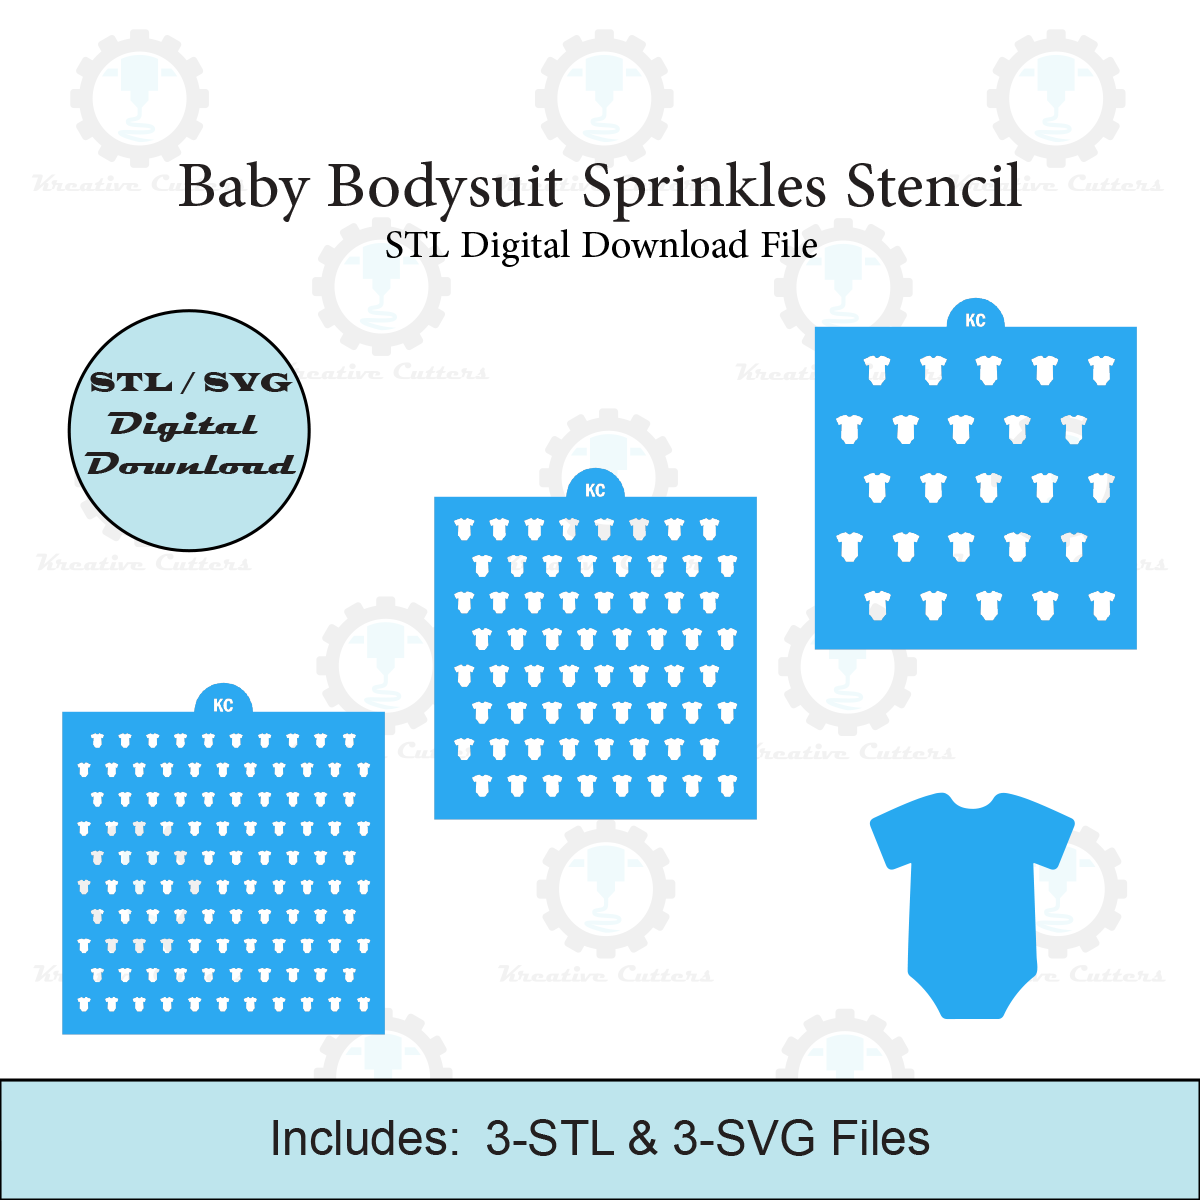 Baby Bodysuit Sprinkles Stencil | Laser or 3D Printed, Decorating Stencils | Digital Download STL & SVG Files